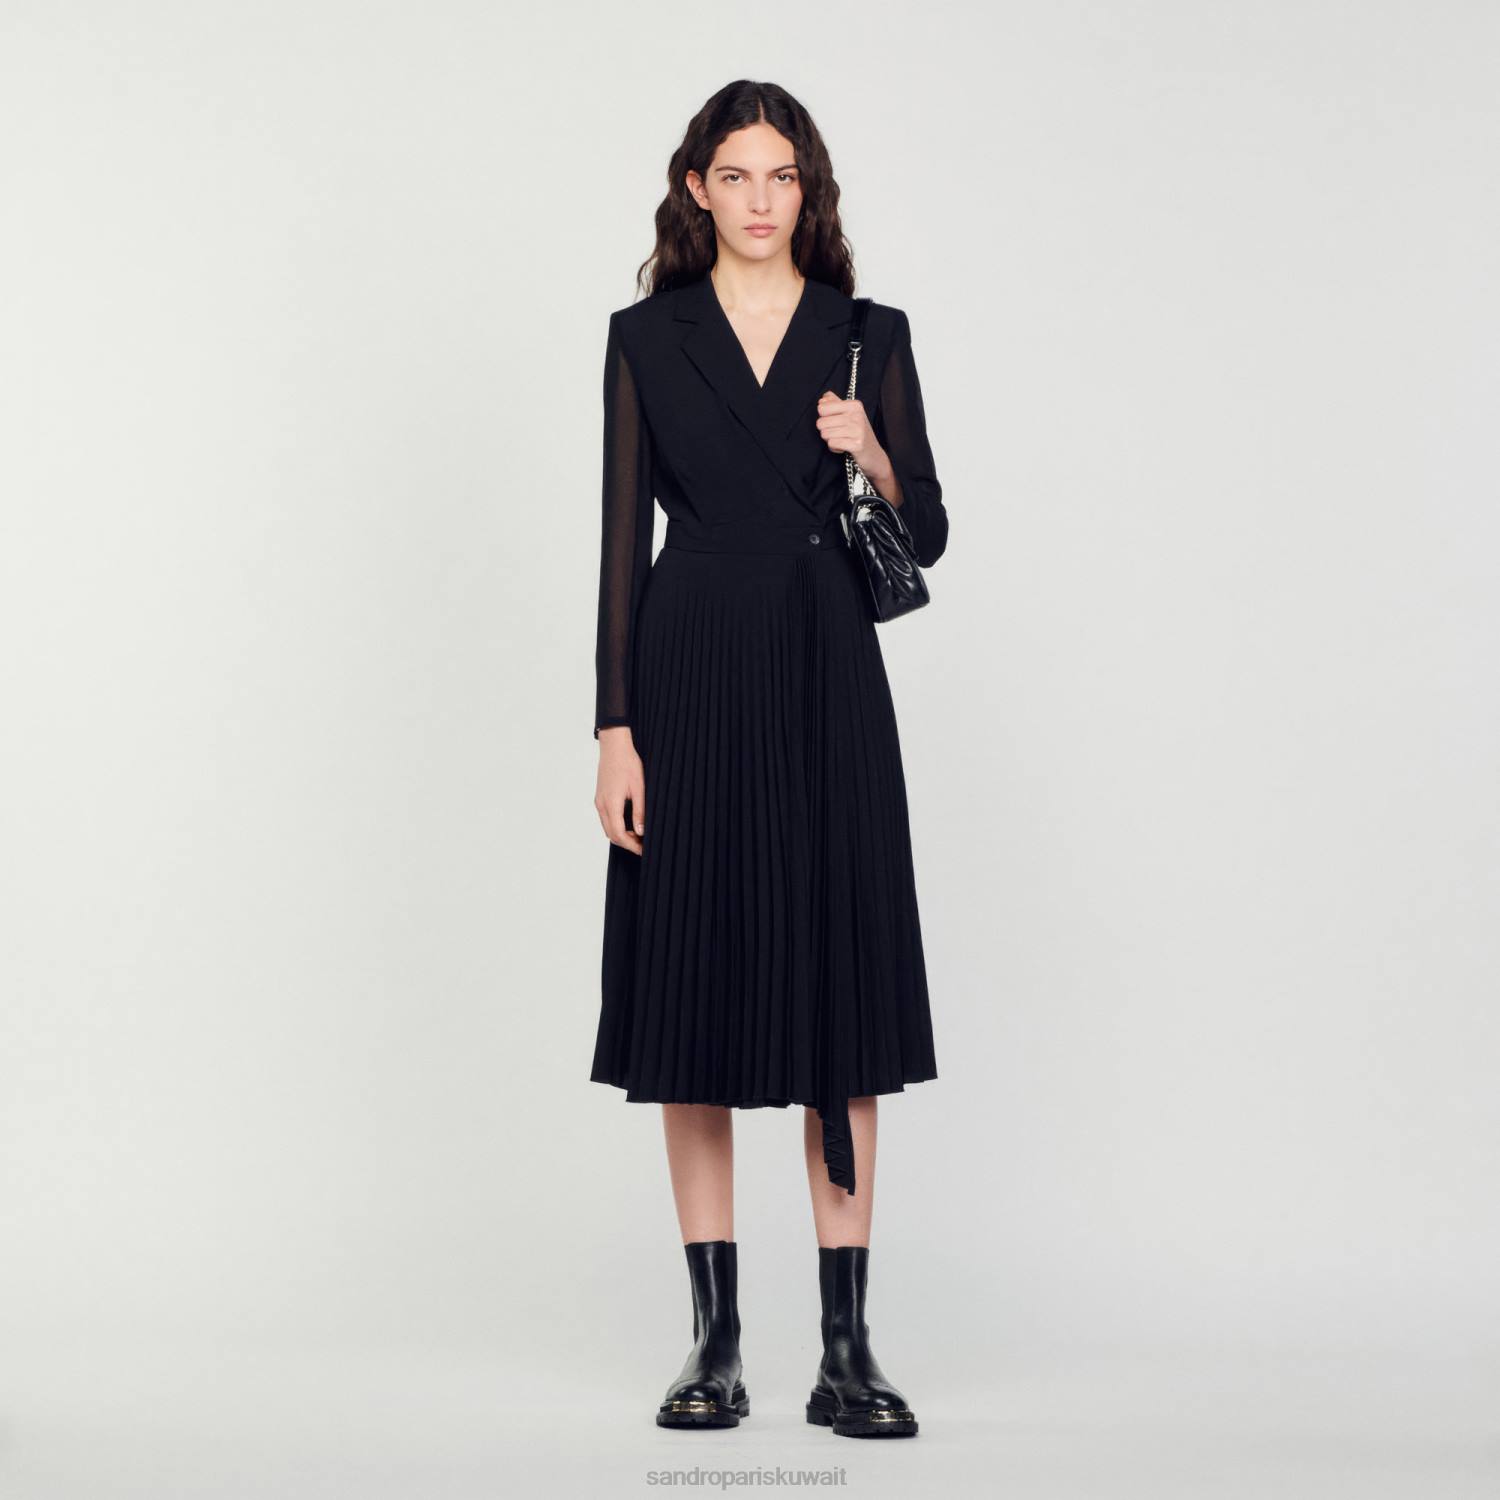 ثياب Sandro Paris فستان بأكمام طويلة من مادة مزدوجة أسود نحيف ZJ00121